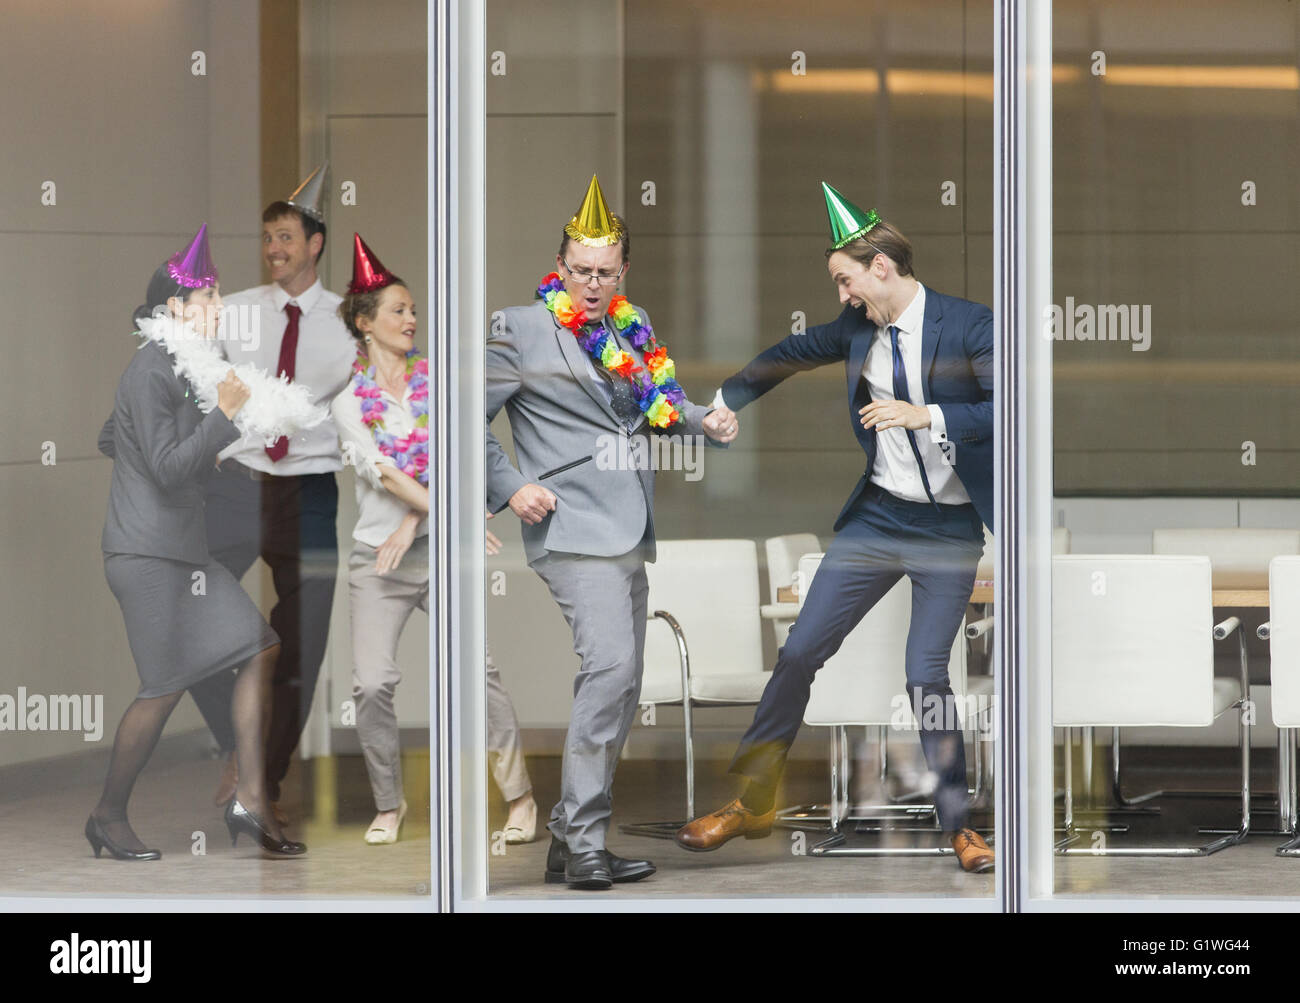 Les gens d'affaires de ludique party hats dancing fenêtre salle de conférence Banque D'Images